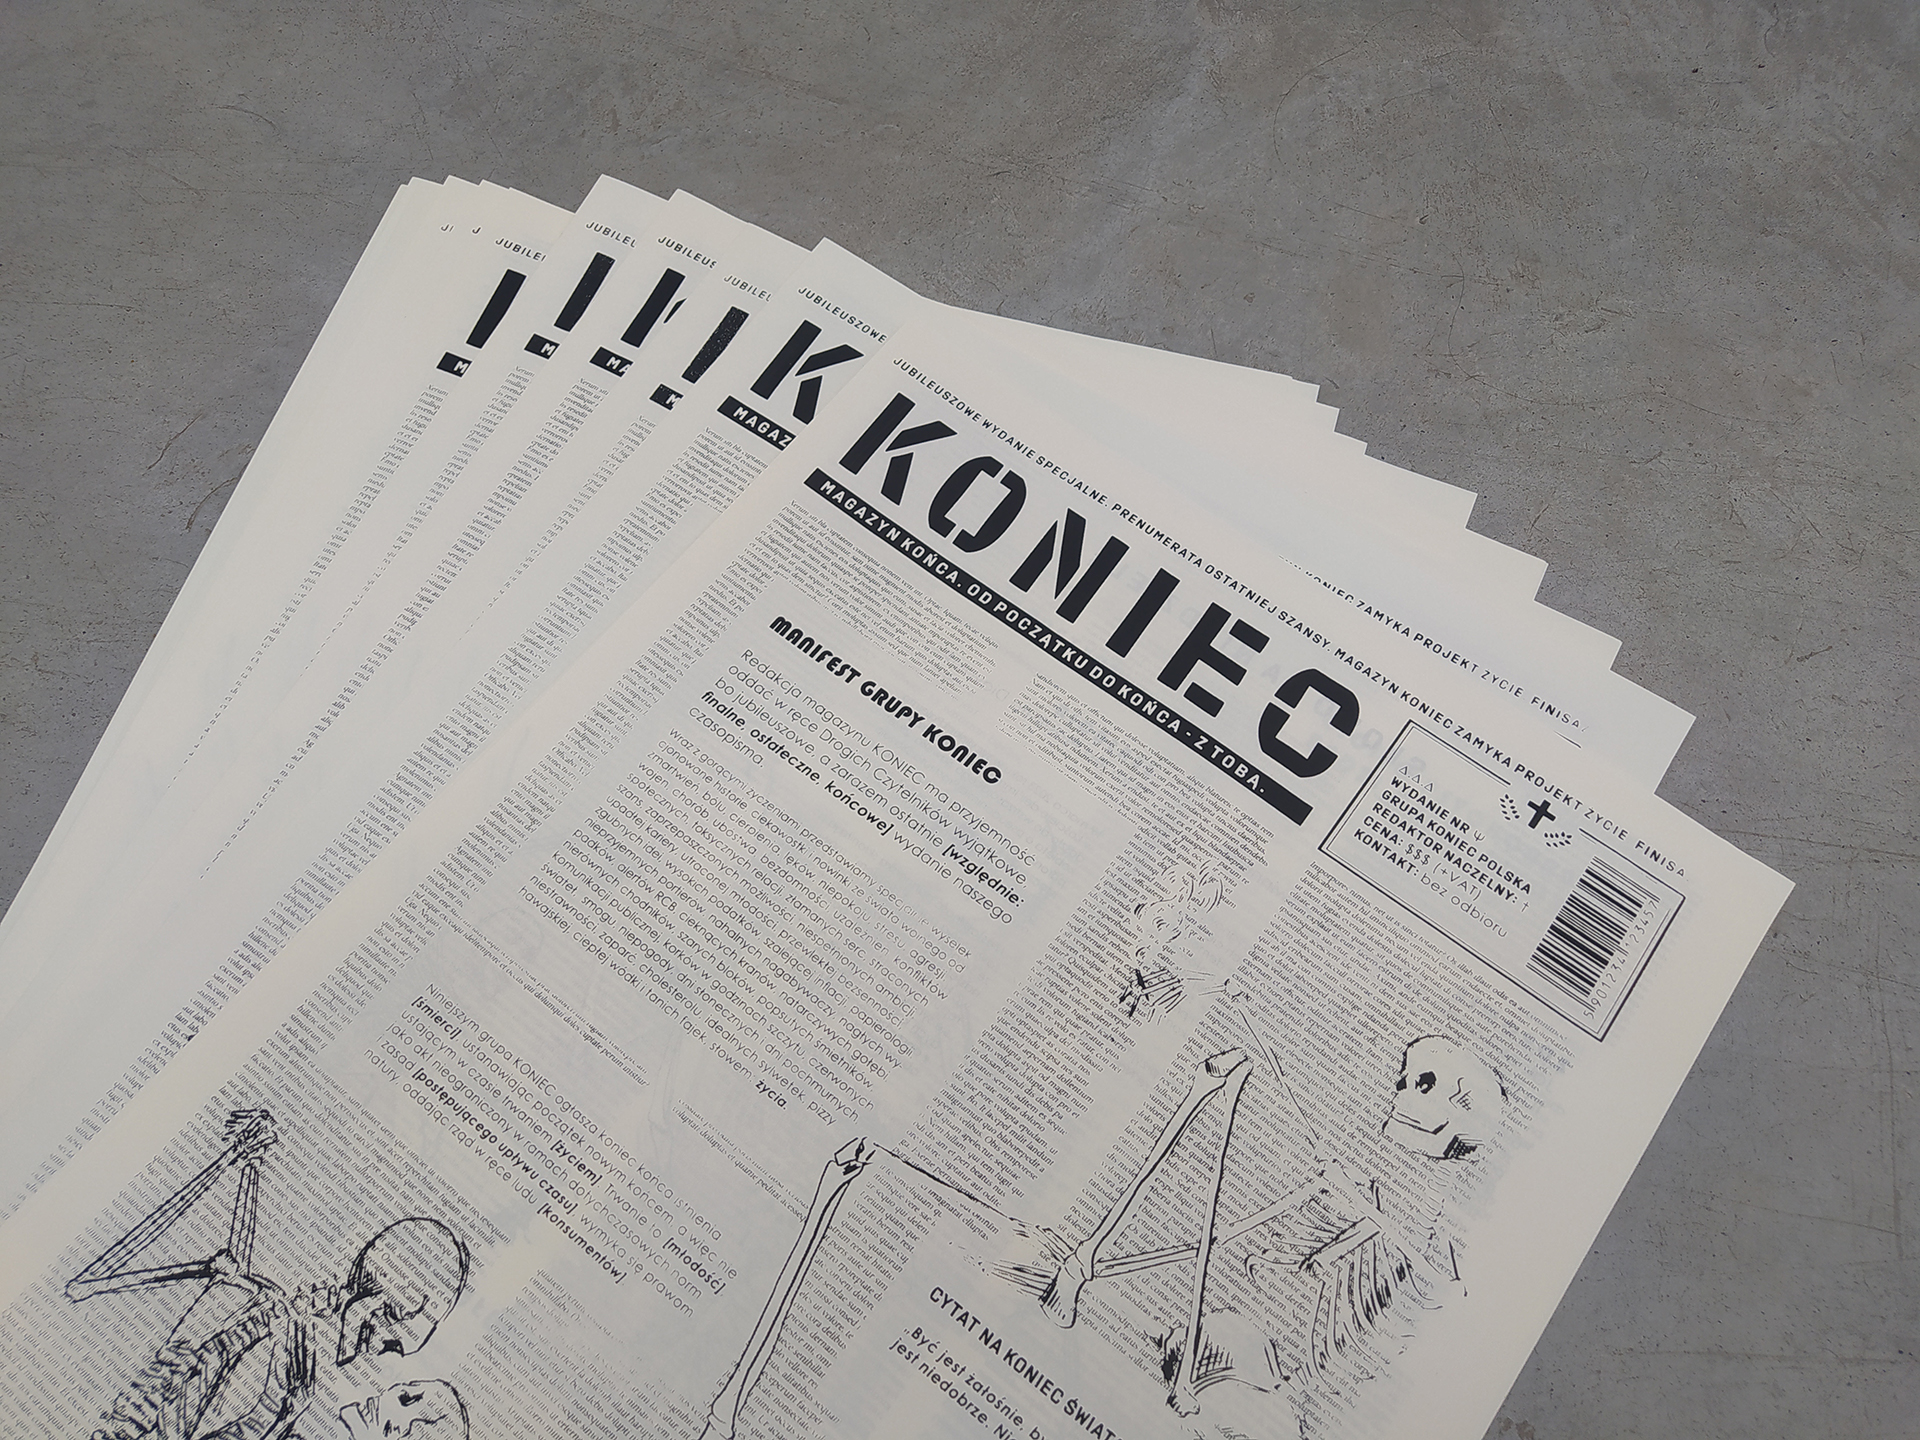 Fotografia przedstawia kilka czarno-białych gazet o Tytule KONIEC ułożonych w wachlarz jedna na drugiej, na betonowym tle.